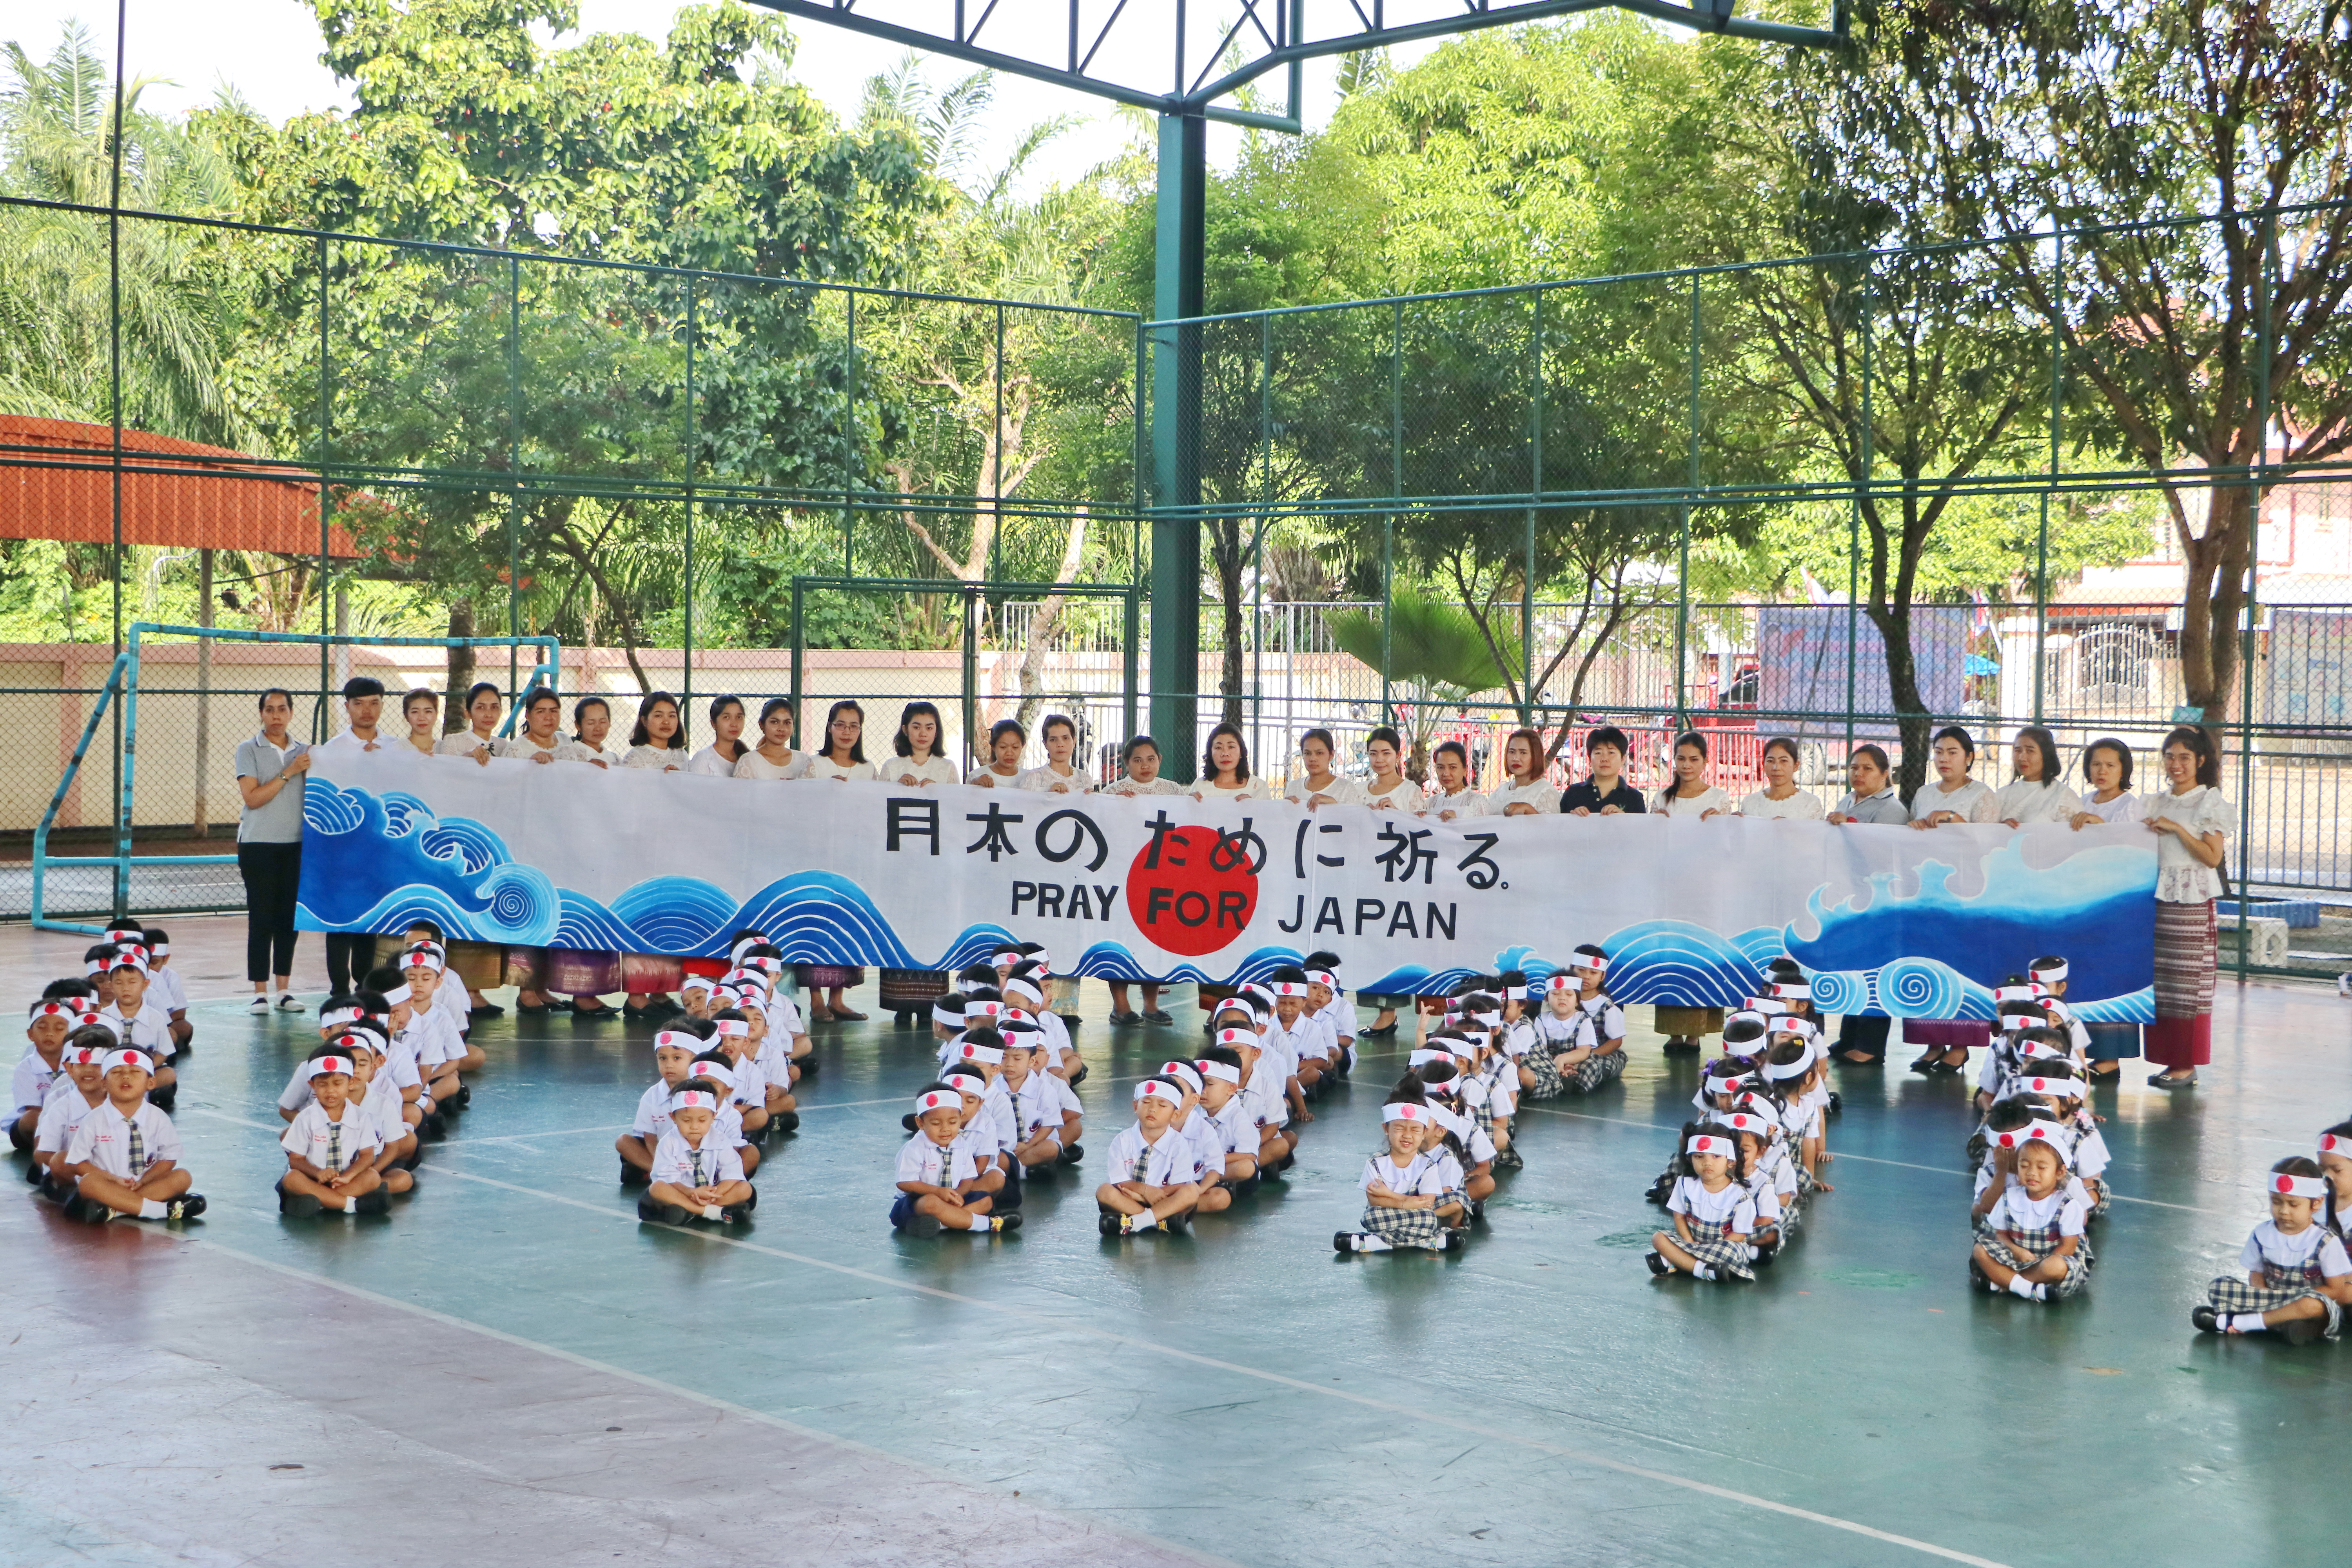 คณะครู บุคลากร และนักเรียนโรงเรียนจอย <br>ส่งใจให้ญี่ปุ่นน้ำท่วม